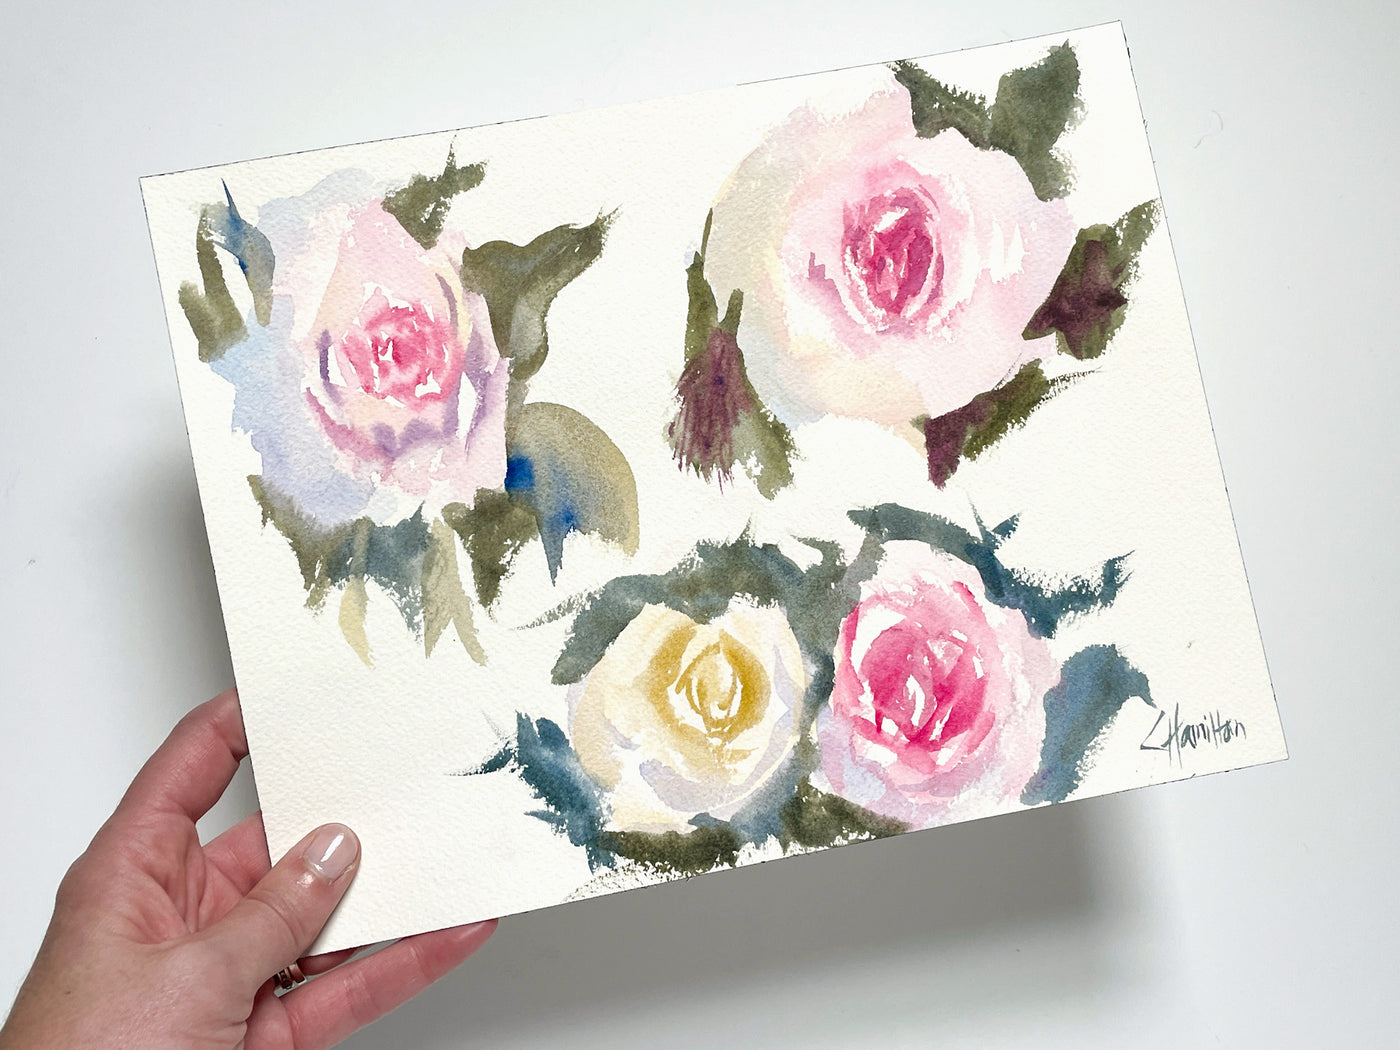 Rose Study Original Watercolor Painting